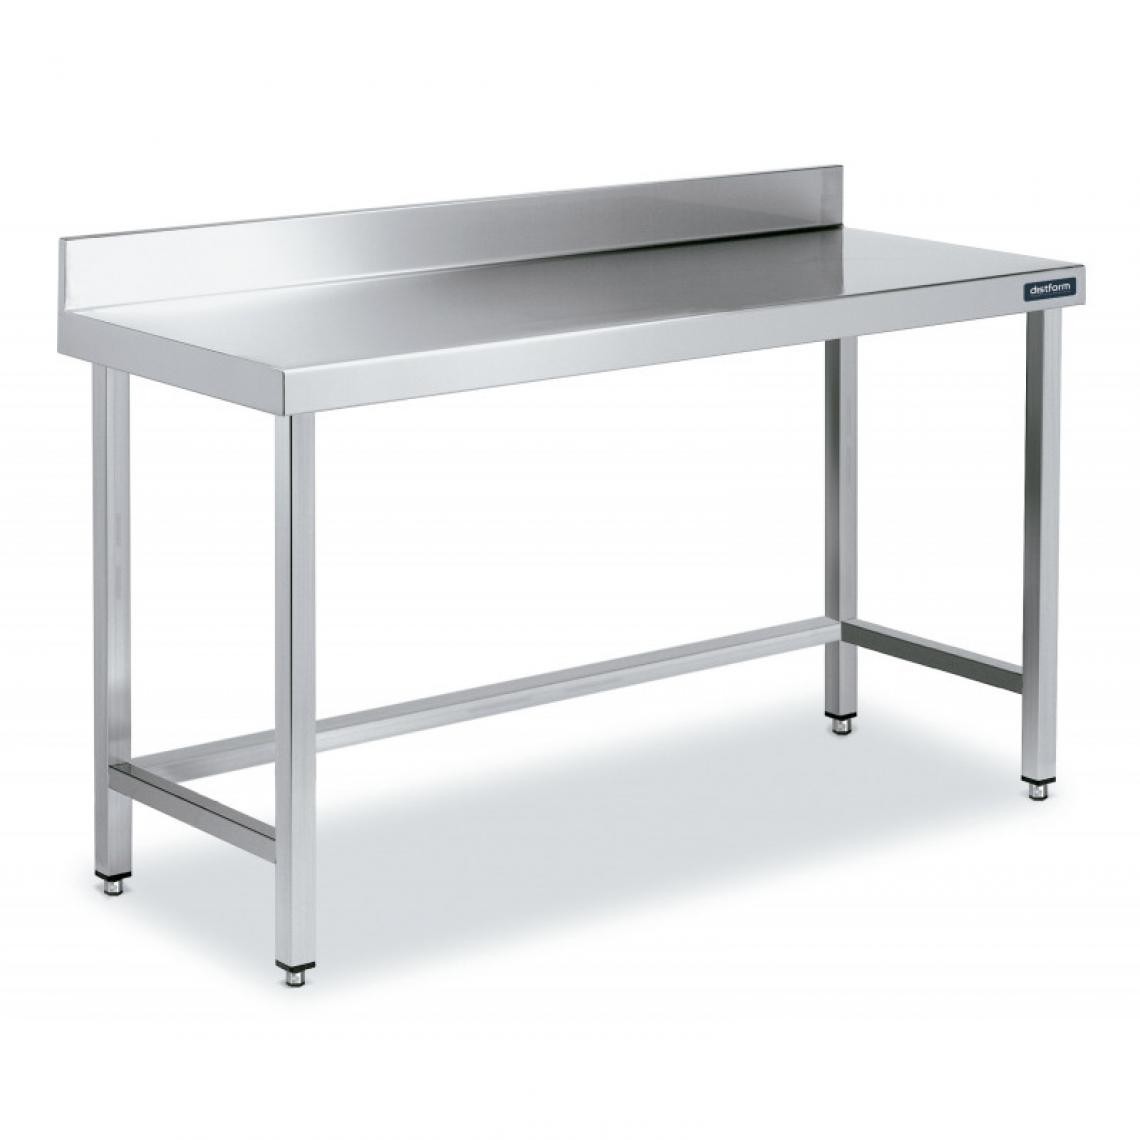 DISTFORM - Table Inox de Travail avec Dosseret Gamme 900 - Distform - Acier inoxydable800x900 - Tables à manger